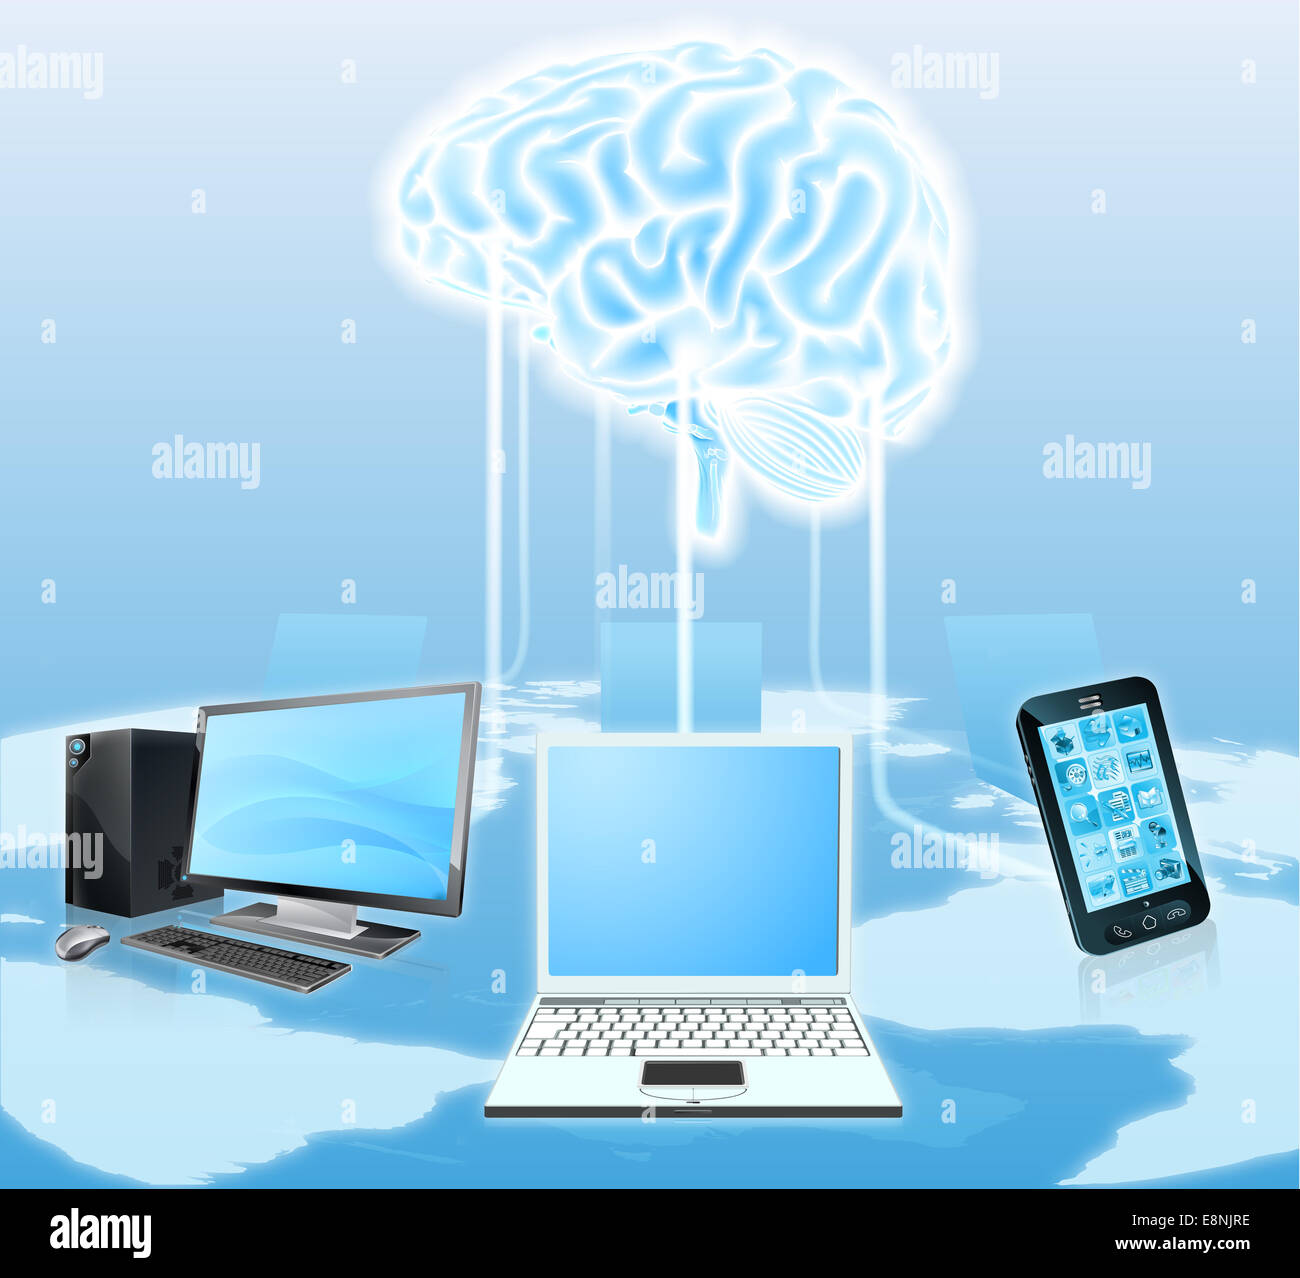 Una ilustración conceptual de dispositivos multimedia como teléfonos móviles y ordenadores portátiles conectados a un cerebro central. Podría ser un timo Foto de stock